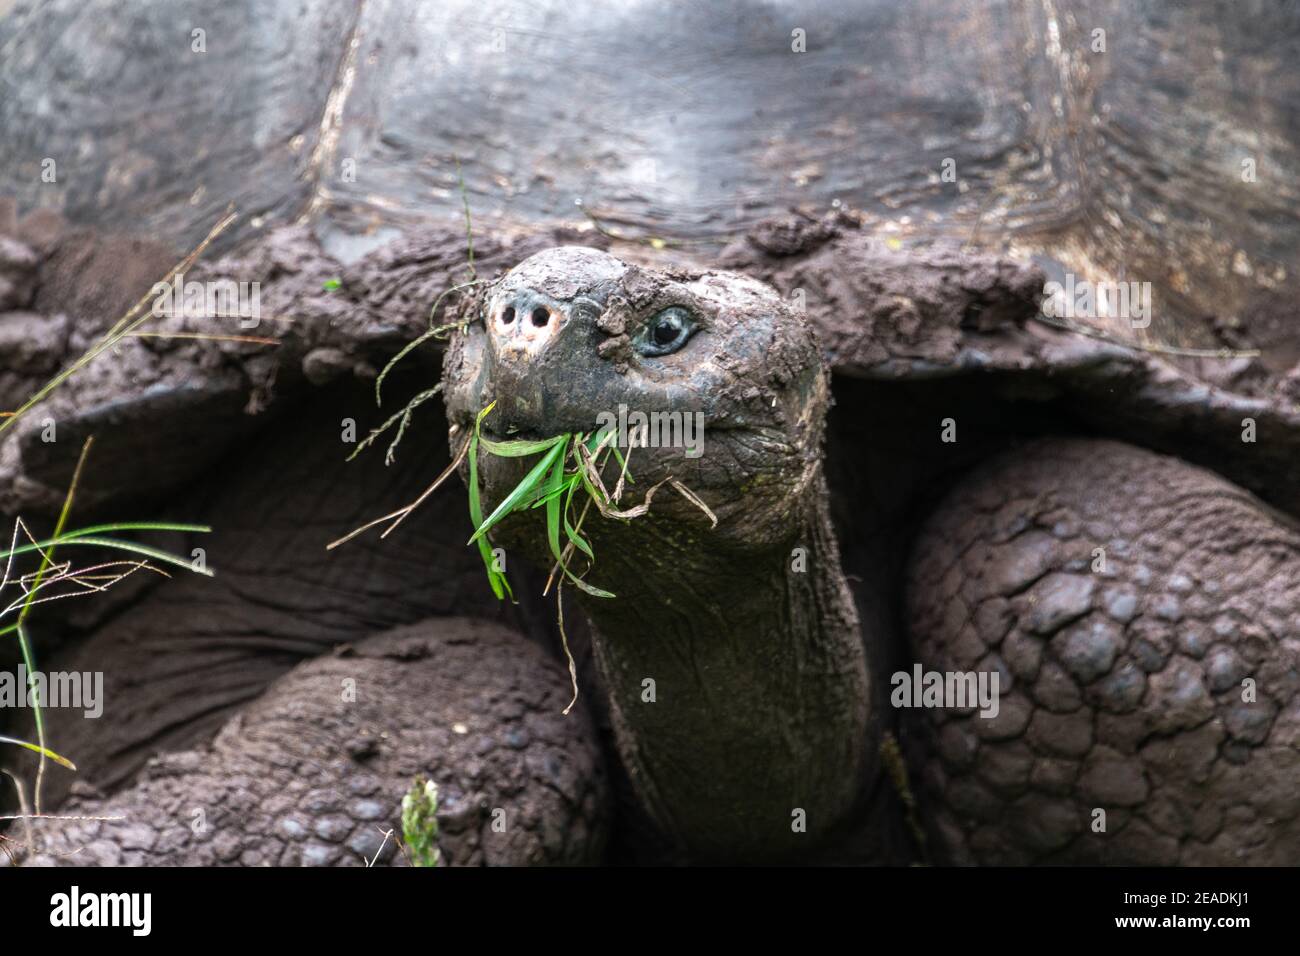 Détail d'une tortue géante dans la réserve de tortue El Chato, îles Galapagos, Équateur Banque D'Images